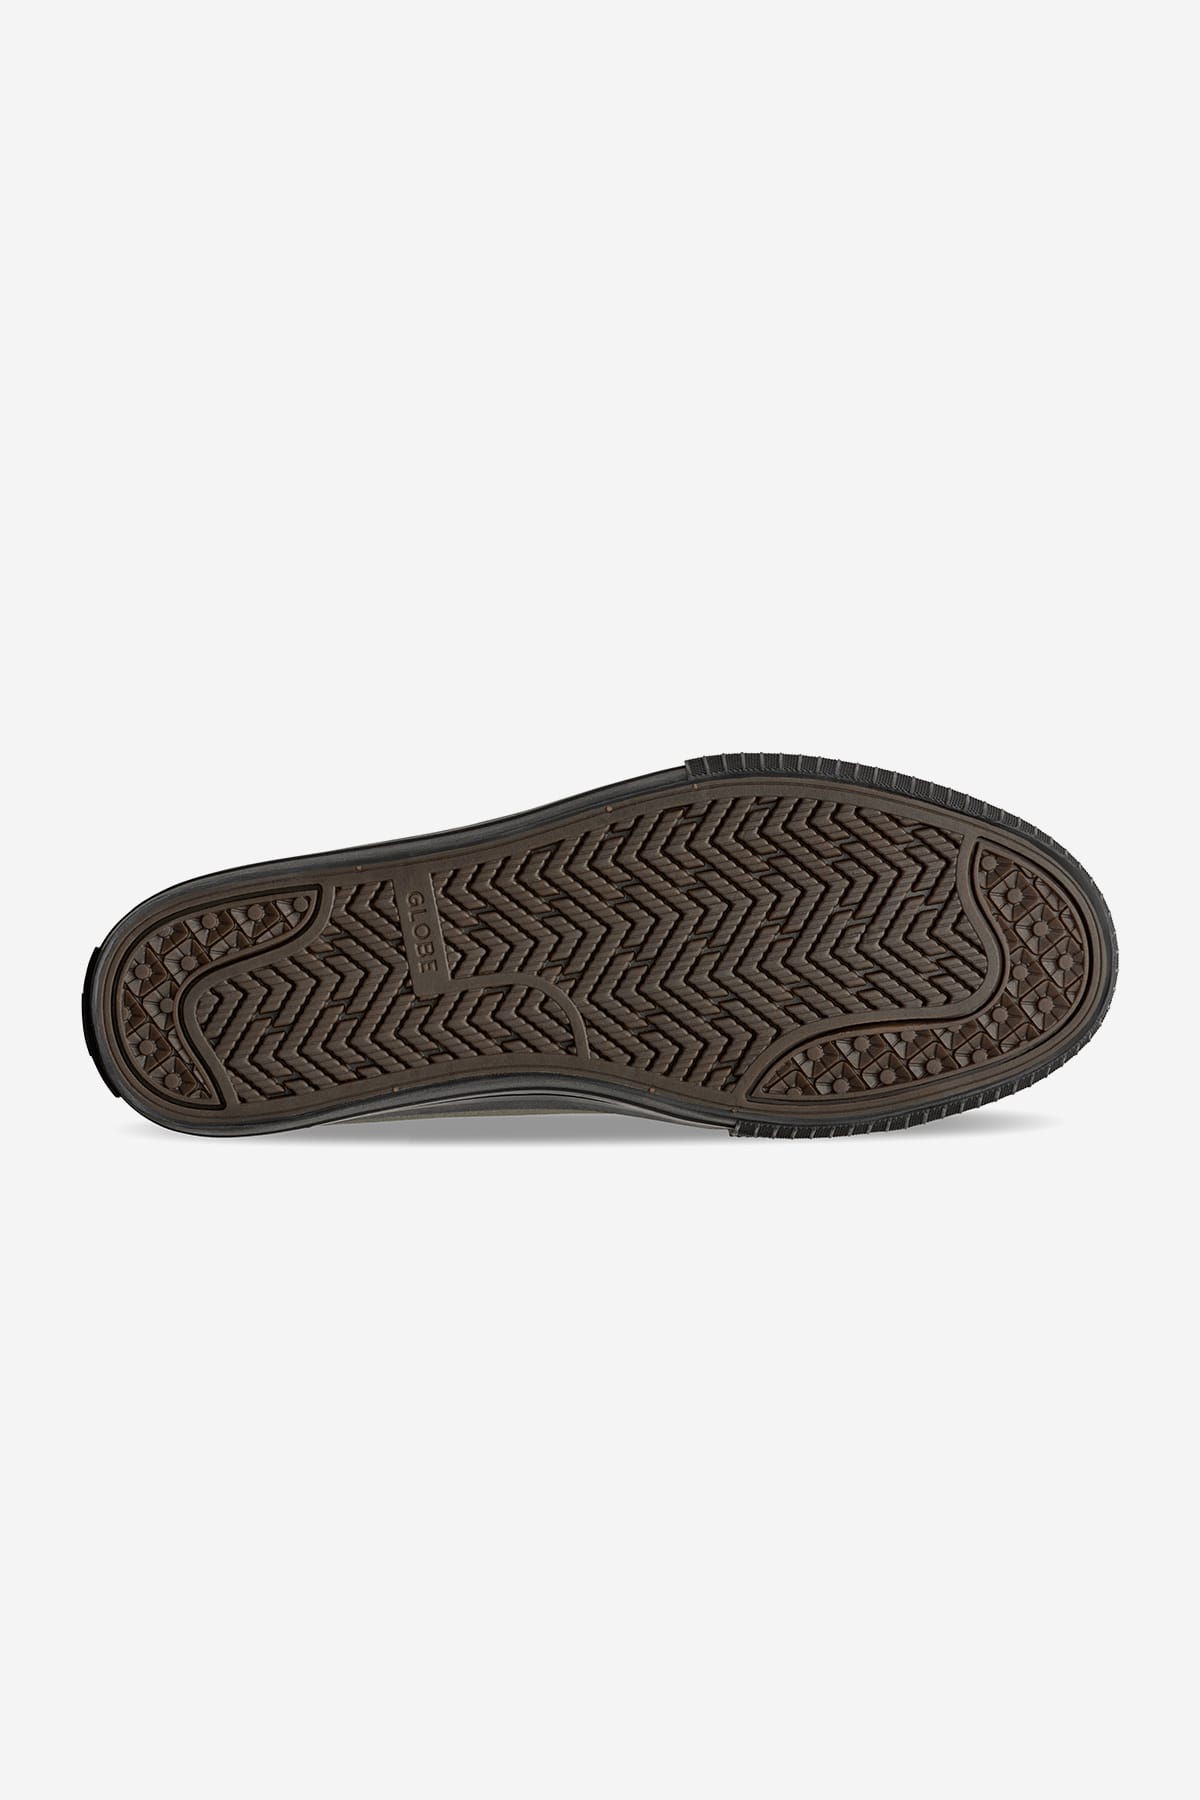 Globe - Gillette - Donker Olive/Zwart - skateboard Schoenen